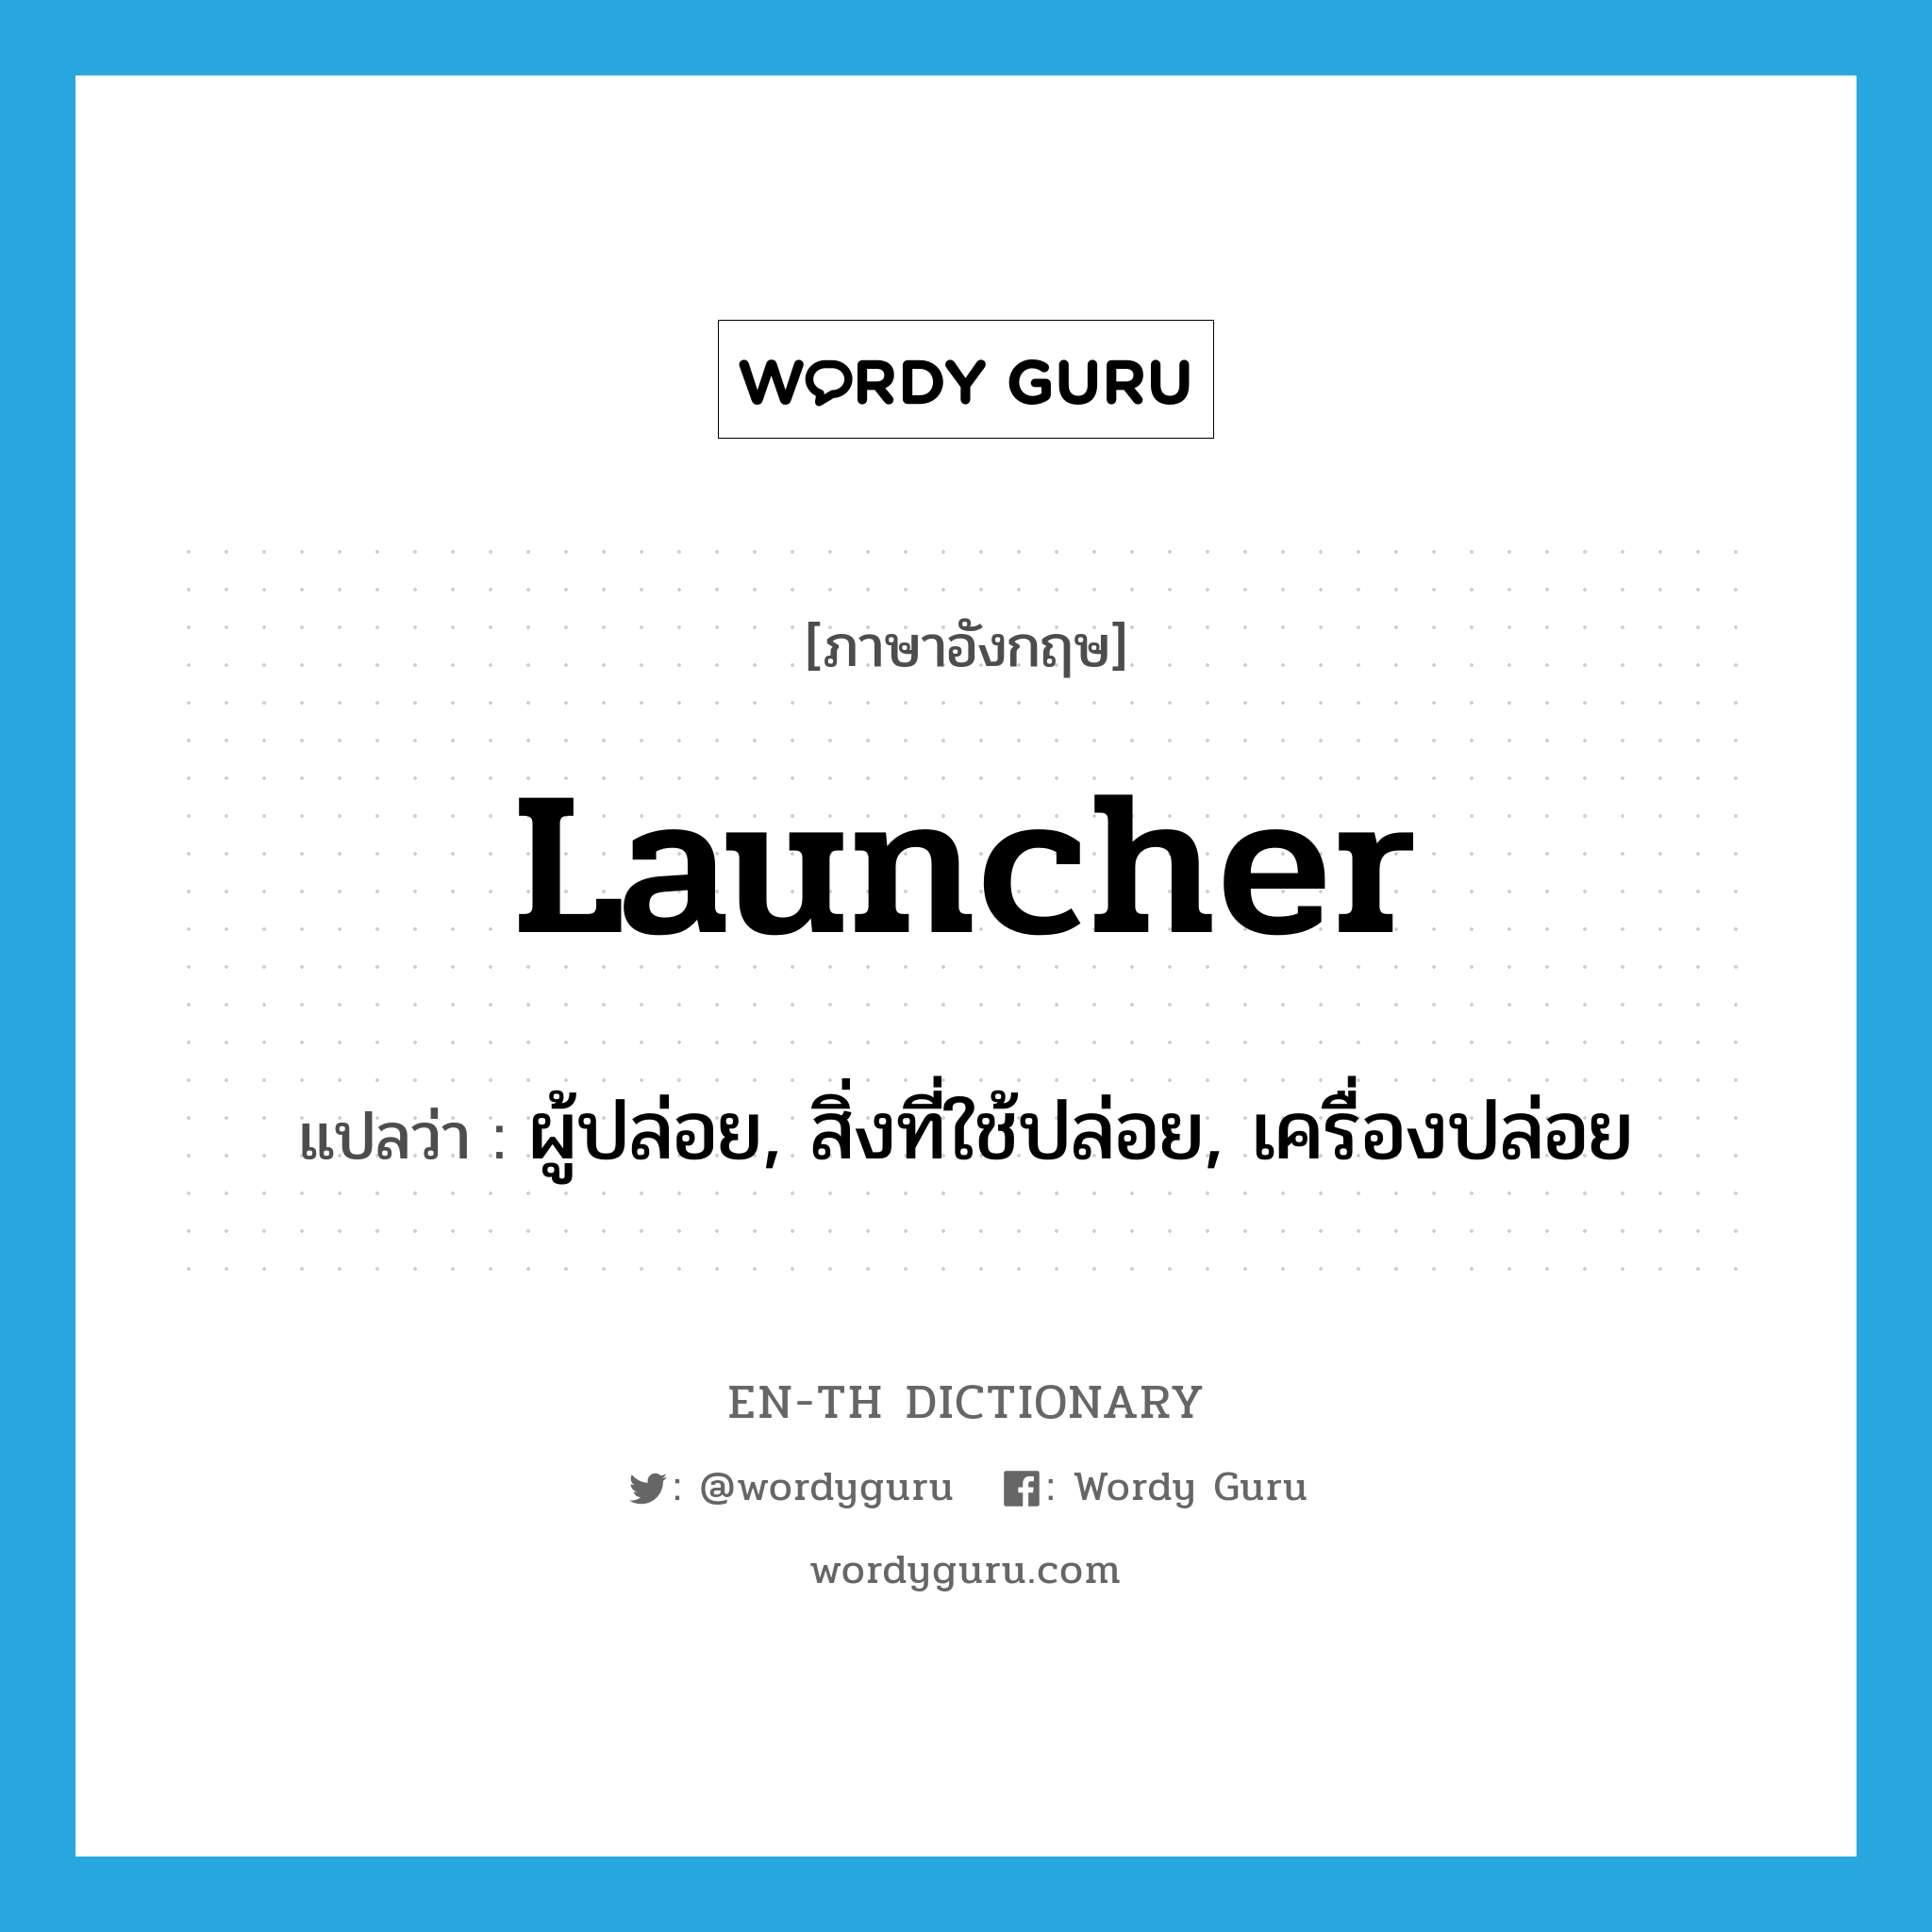 launcher แปลว่า?, คำศัพท์ภาษาอังกฤษ launcher แปลว่า ผู้ปล่อย, สิ่งที่ใช้ปล่อย, เครื่องปล่อย ประเภท N หมวด N